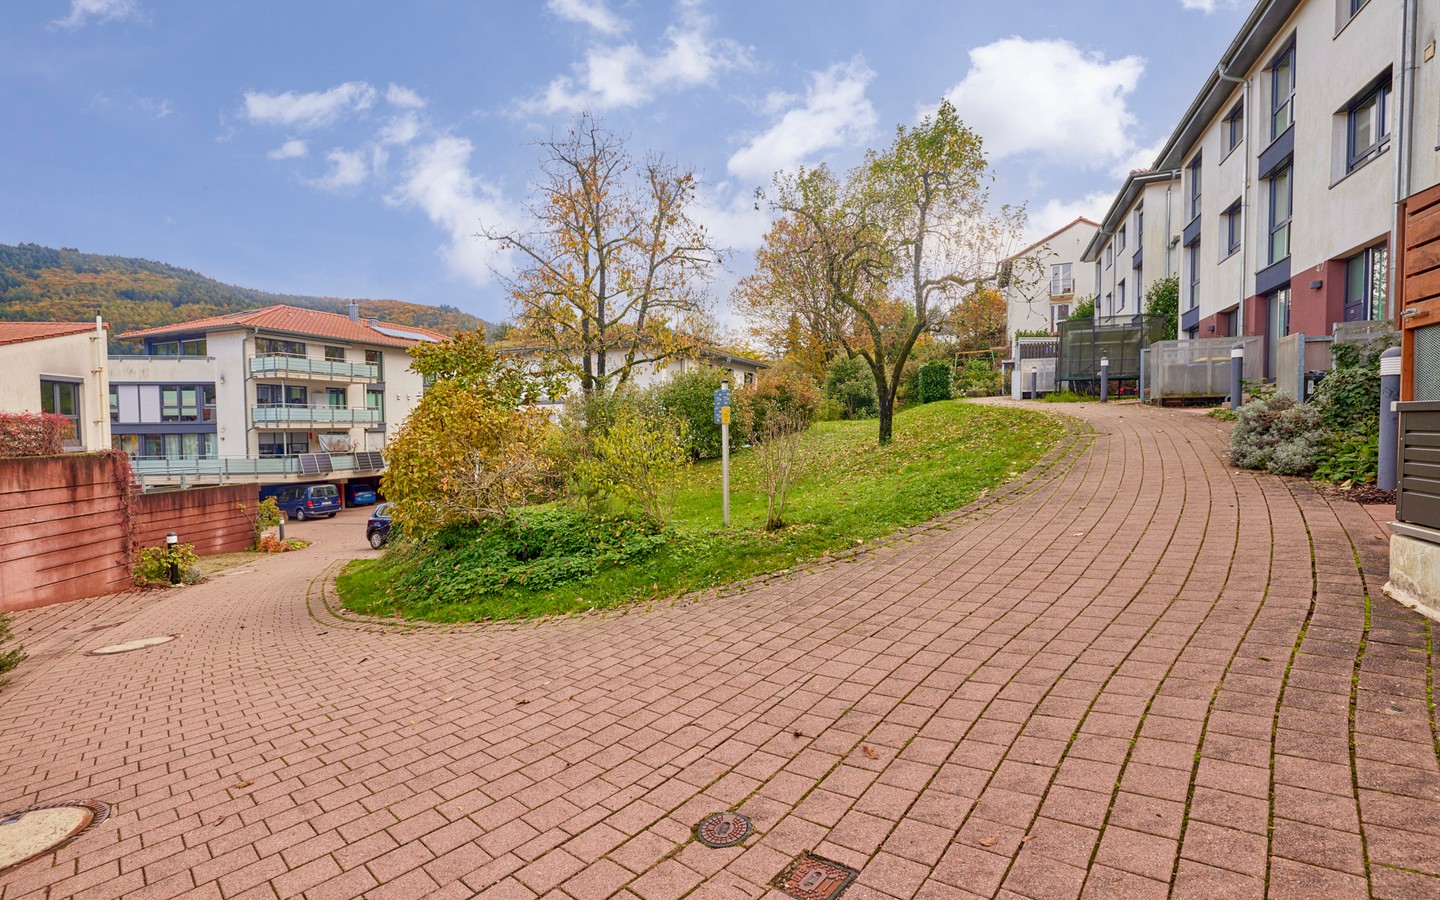 Wohnanlage - Modern & naturnah: großzügiges RMH mit viel Platz, Garten und Terrasse in Heidelberg-Schlierbach